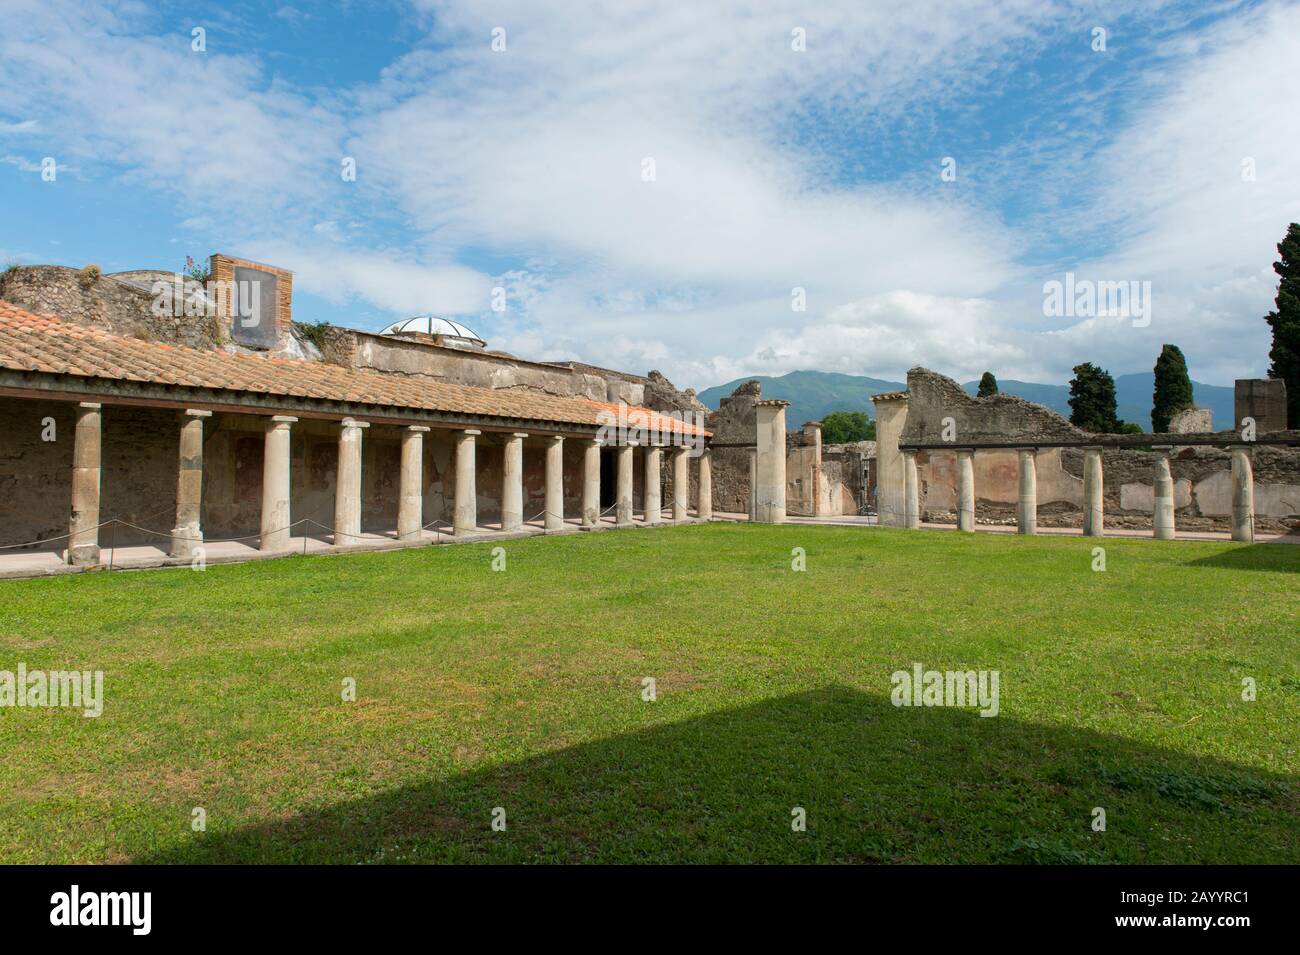 Le Terme Stabiane Palaestra di Pompei, in Italia, risalgono probabilmente al 5th secolo a.C. Foto Stock